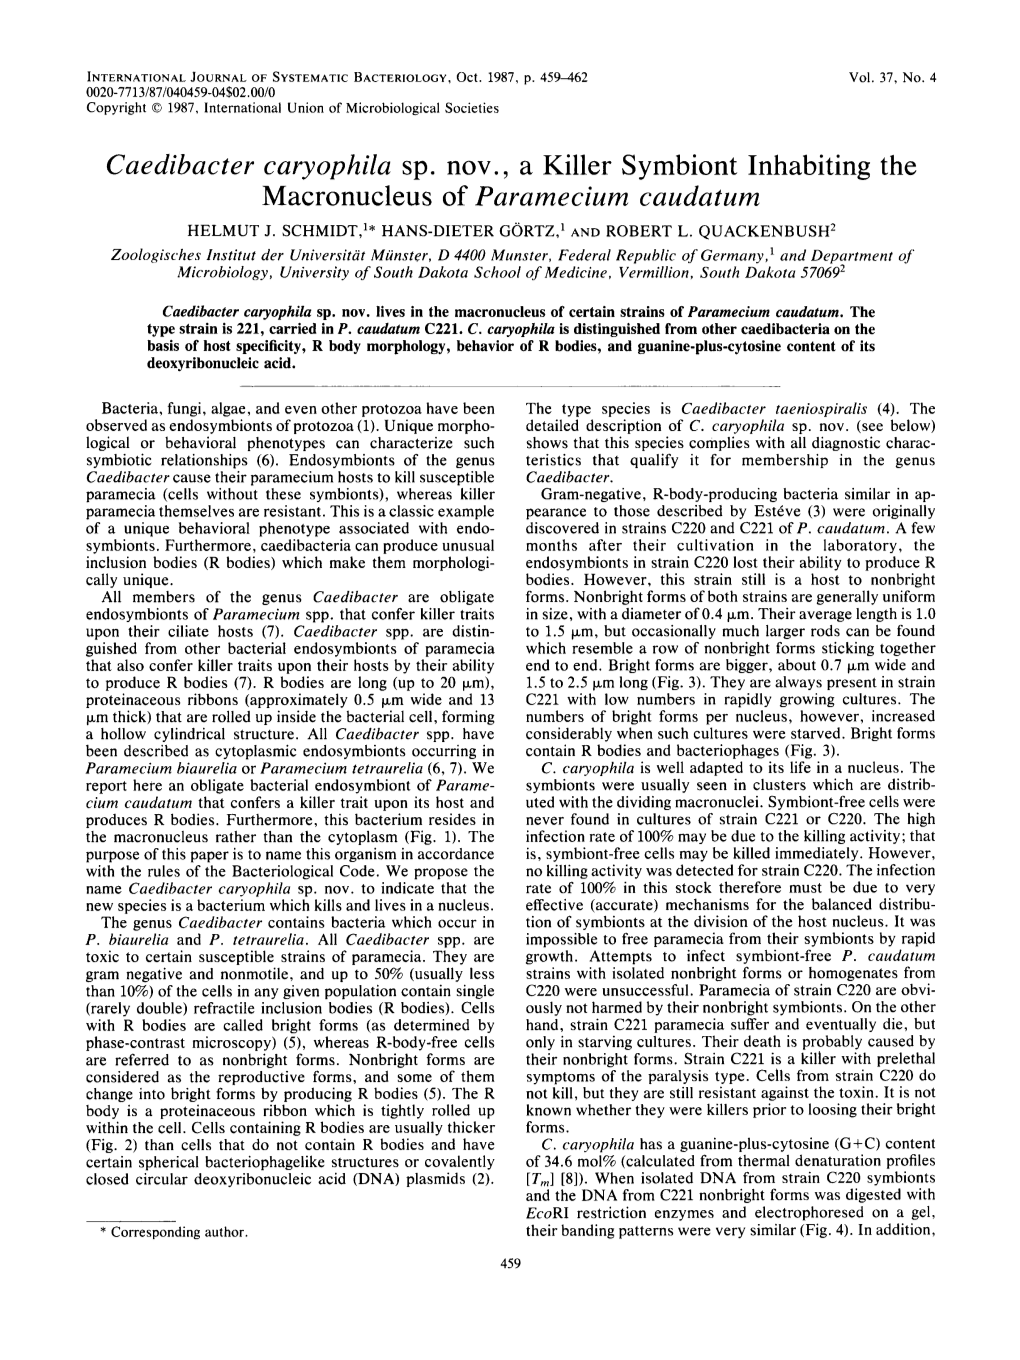 Caedibacter Caryophila Sp. Nov. a Killer Symbiont Inhabiting the Macronucleus of Paramecium Caudatum